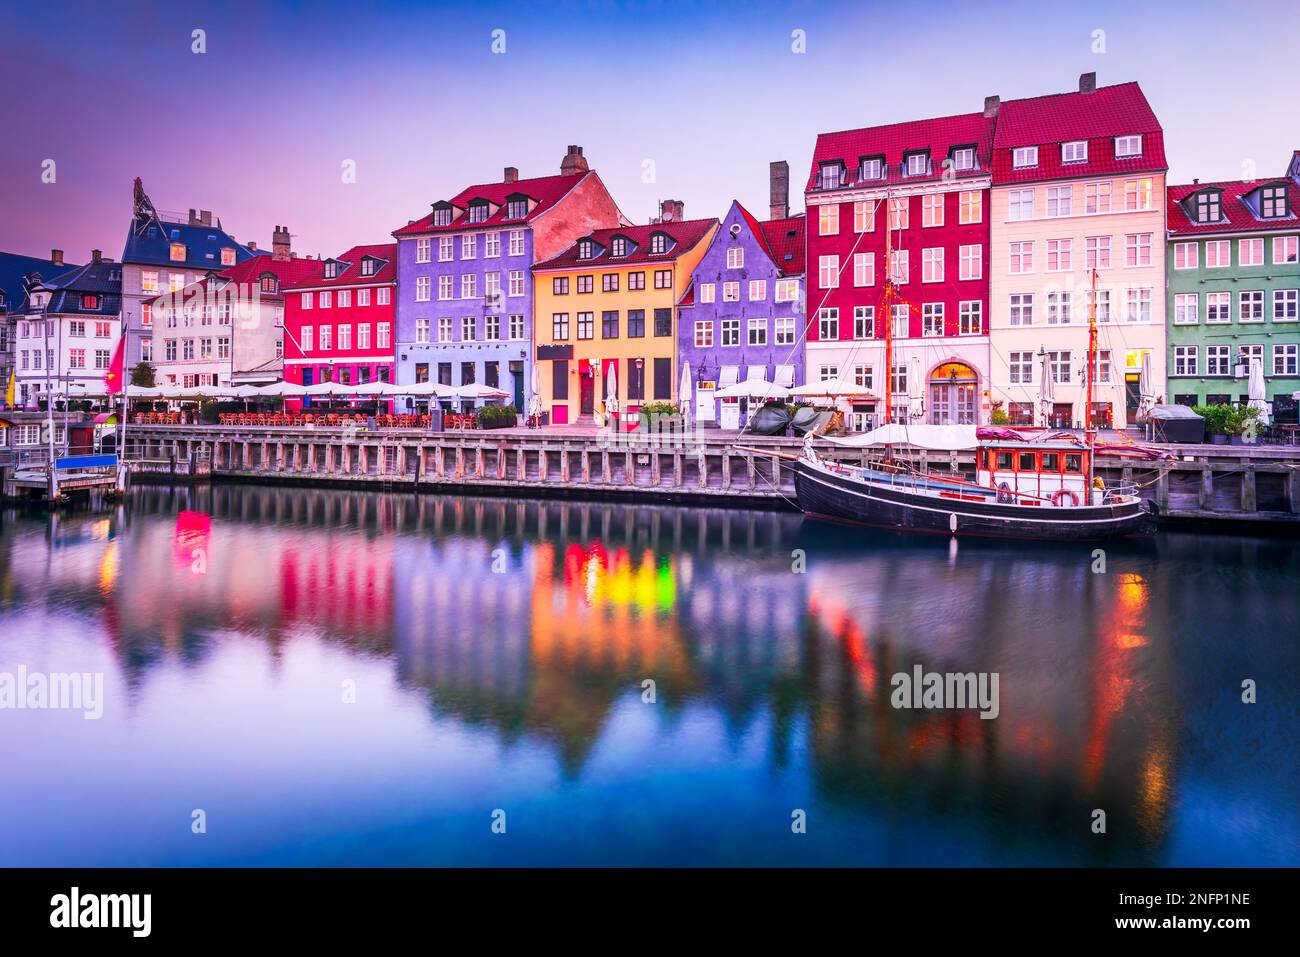 Kobenhavn, Dänemark. Nyhavn, Kopenhagens ikonischer Kanal, reflektiert farbenfrohe Gebäude und glühende Straßenlaternen in der Dämmerung, was zu einem malerischen Tourist wird Stockfoto